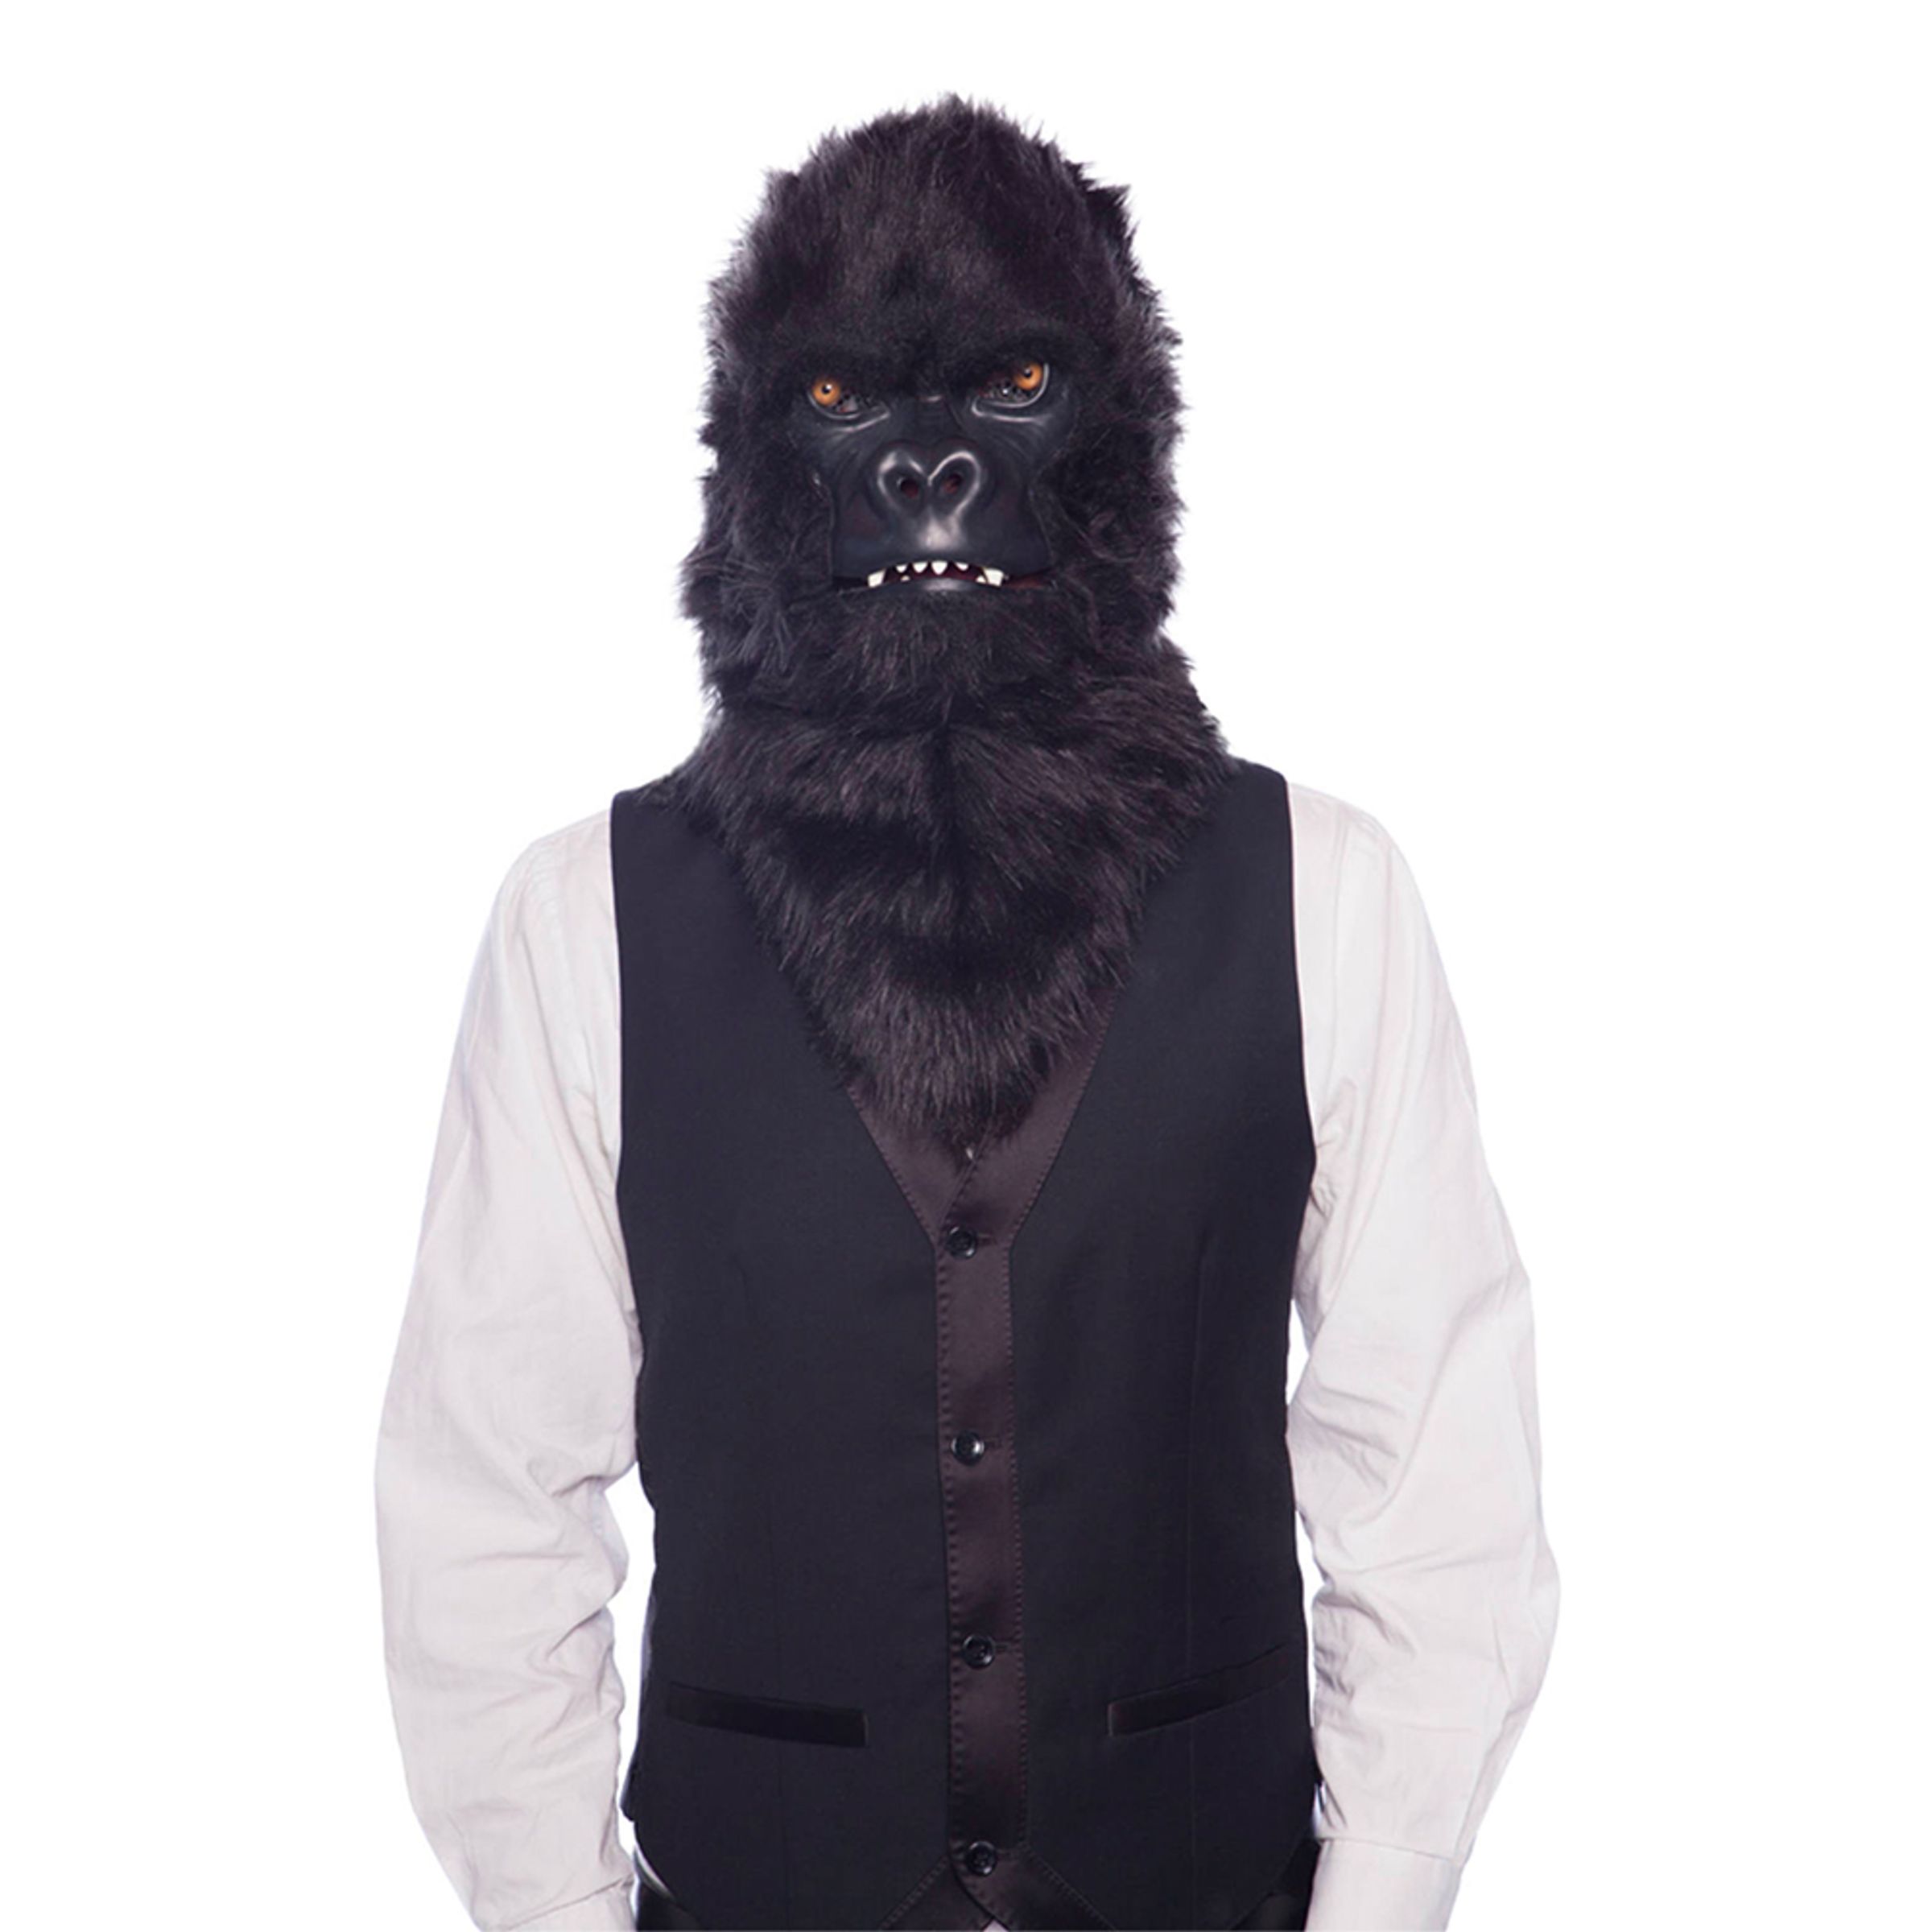 Gorilla - Gorilla Mask med Rörande Mun